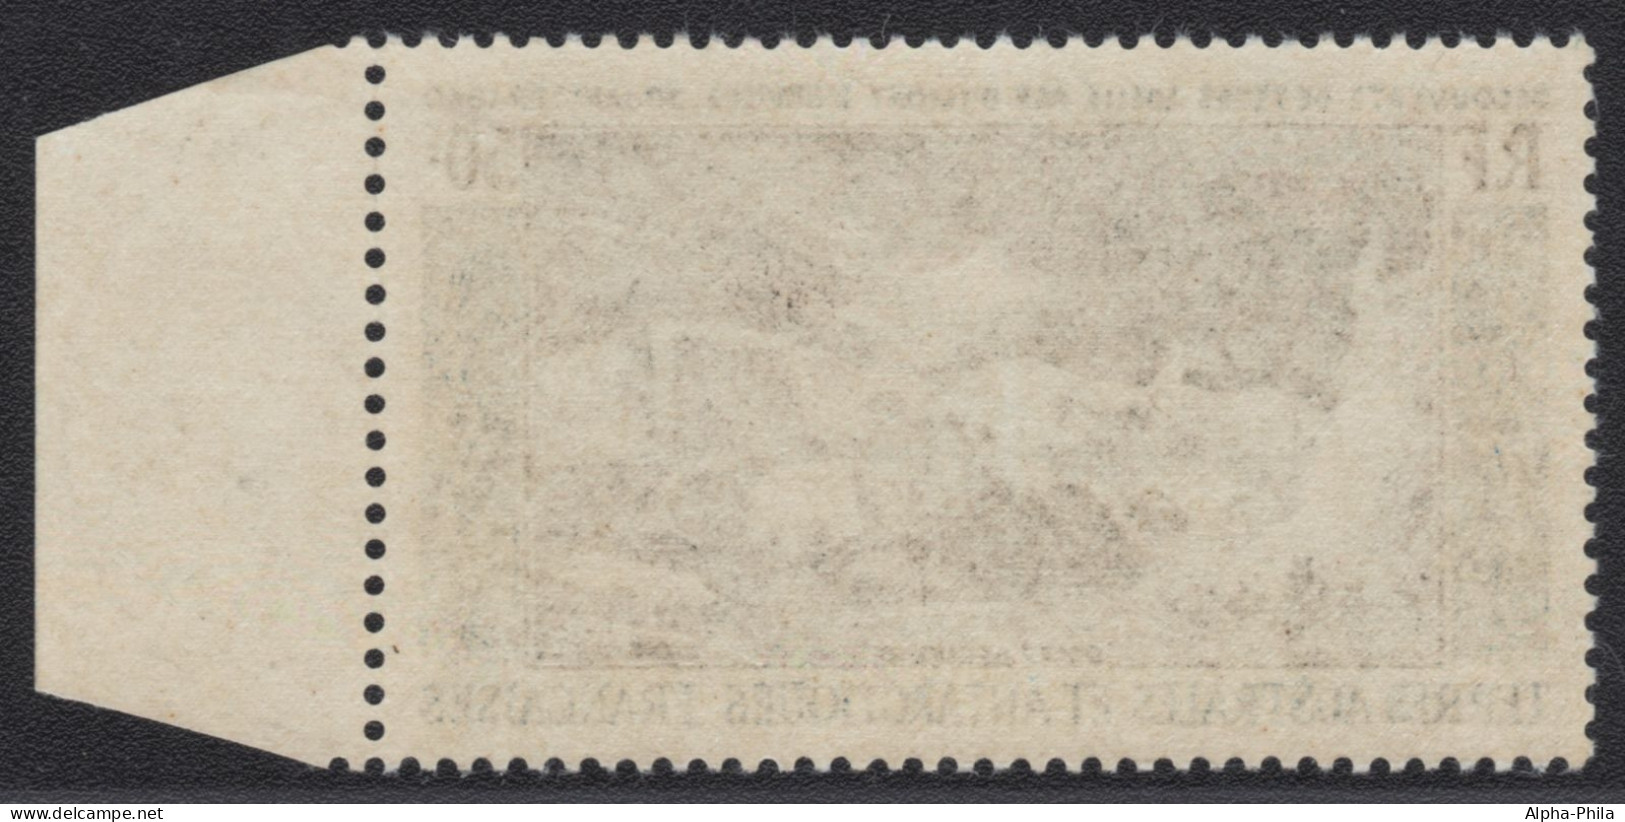 TAAF 1963 - Mi-Nr. 31 Gest / Used - Adelieland - Used Stamps